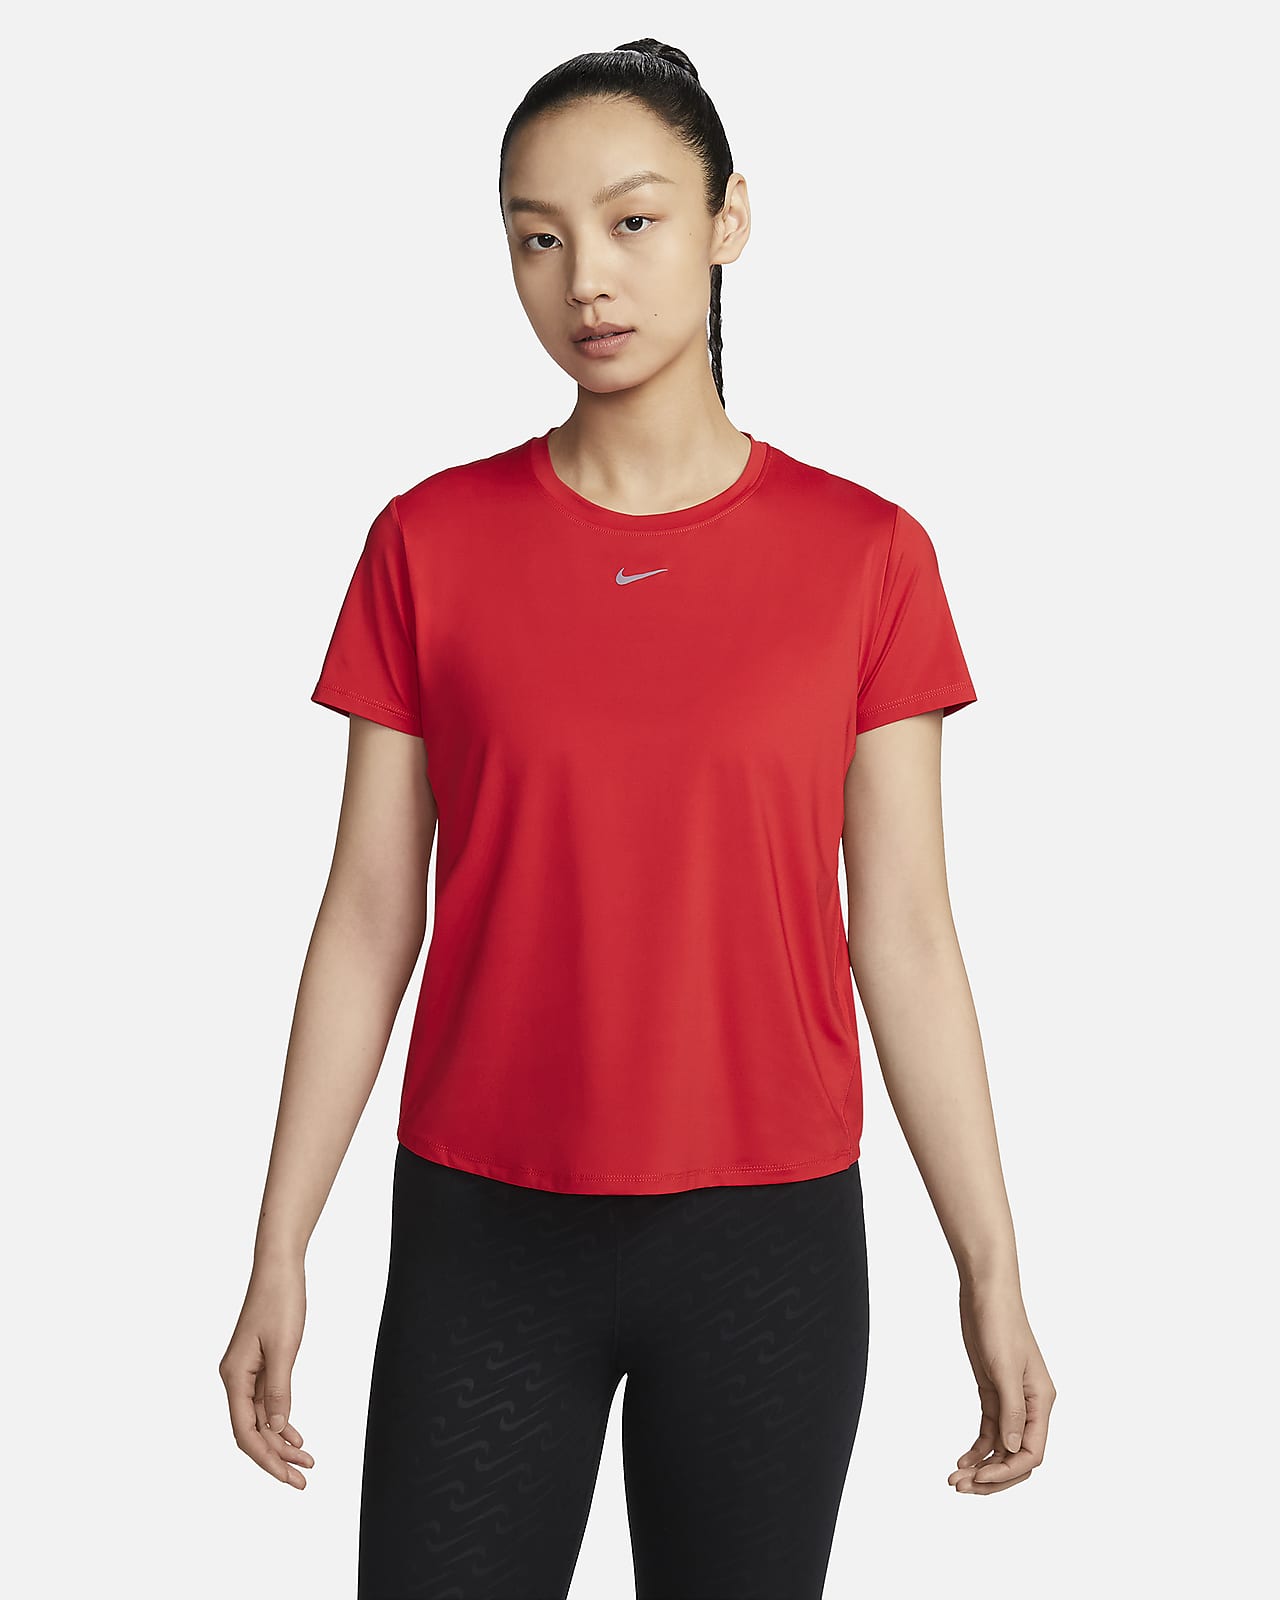 Nike One Classic Dri-FIT 女子速干经典款短袖上衣